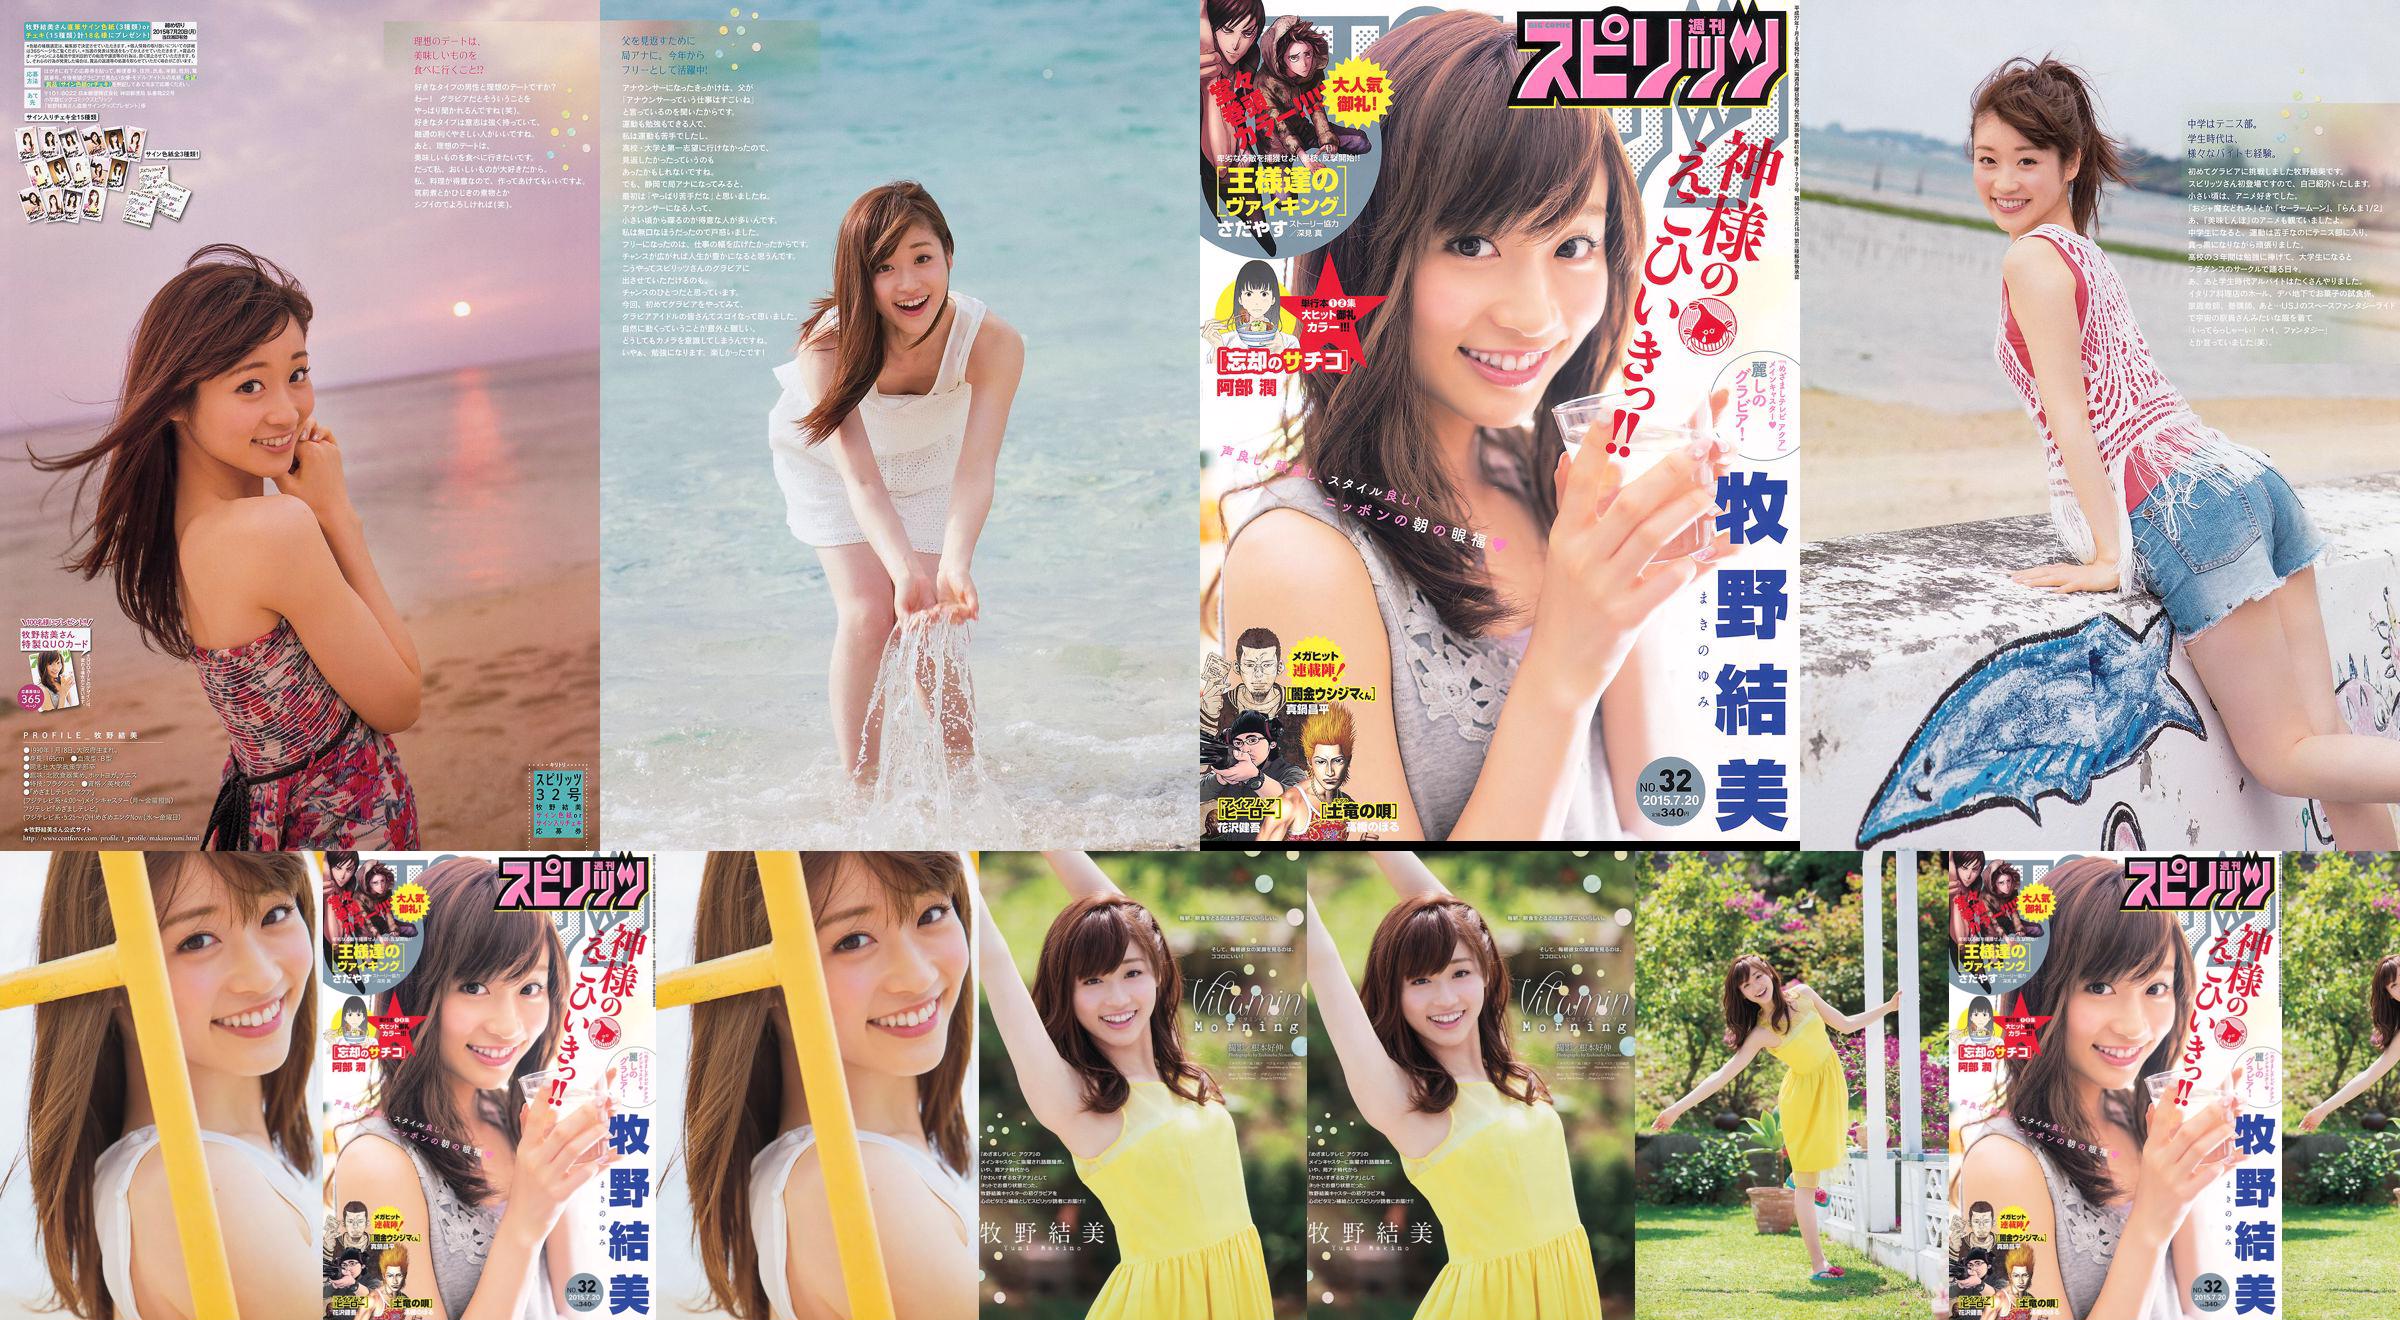 [Weekly Big Comic Spirits] Yumi Makino 2015 No.32 Photo Magazine No.a81612 Página 2